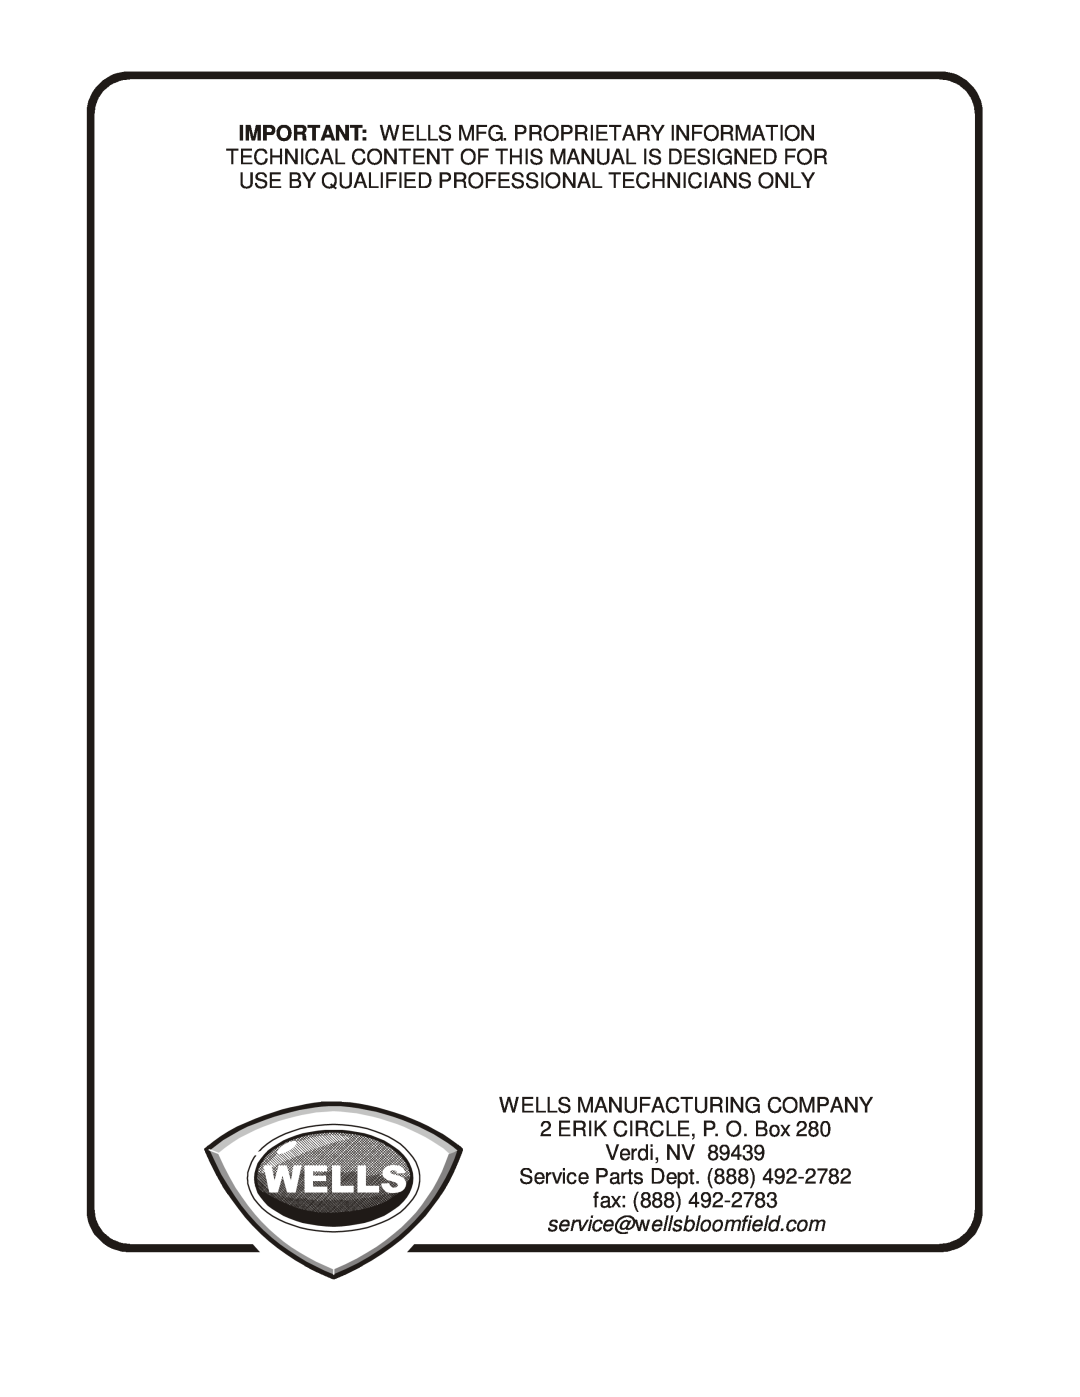 Wells BWB-1S manual Wells Manufacturing Company, ERIK CIRCLE, P. O. Box Verdi, NV, Service Parts Dept. 888 fax 